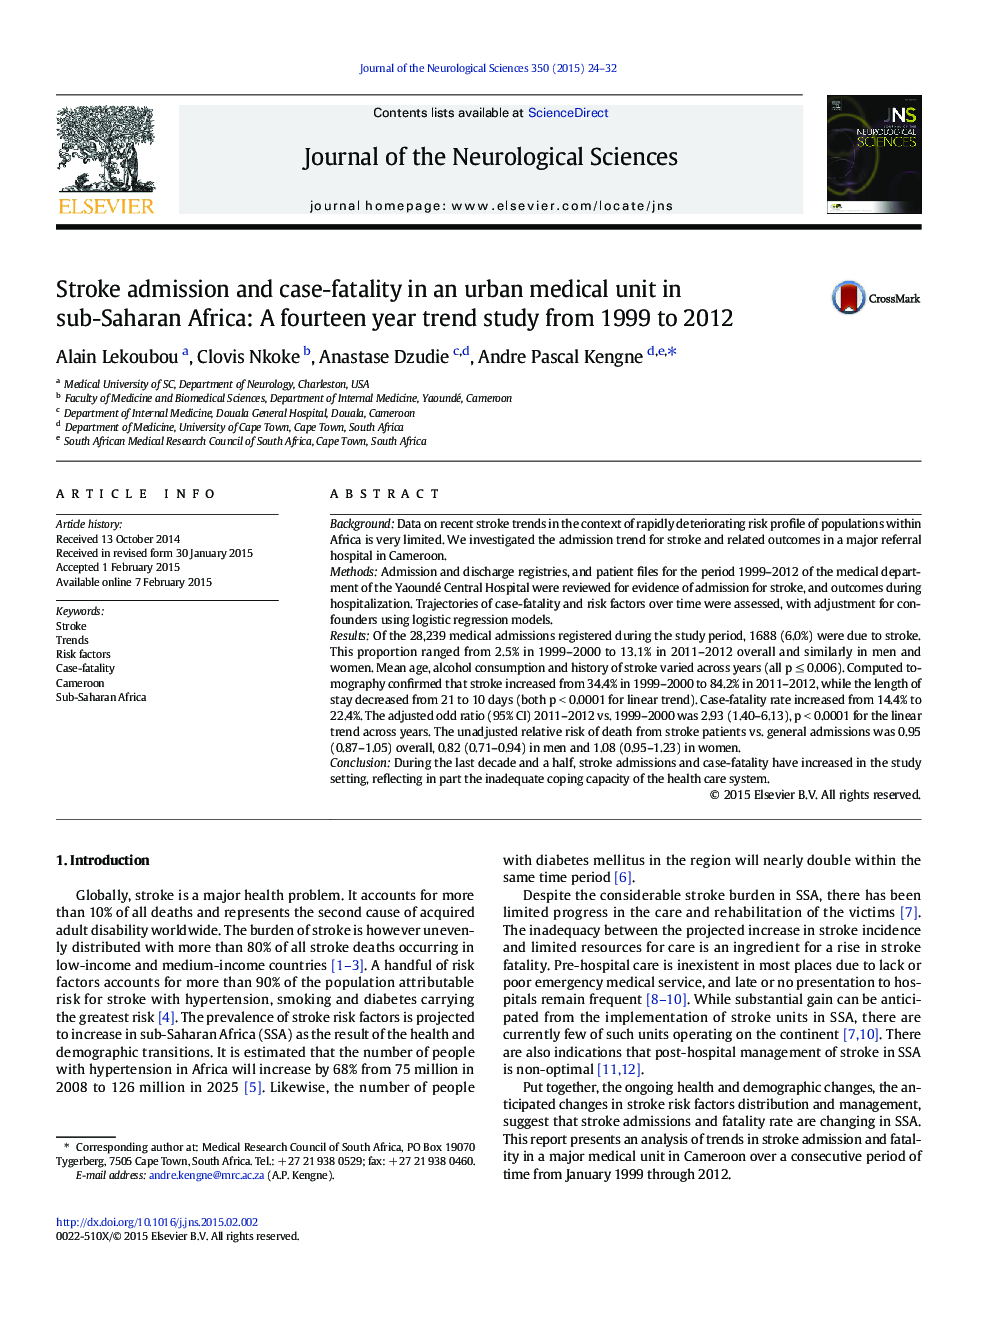 پذیرش سکته مغزی و فاکتور مرگ و میر در یک واحد پزشکی شهری در کشورهای جنوب صحرای آفریقا: یک مطالعه چهارده ساله از سال 1999 تا 2012 